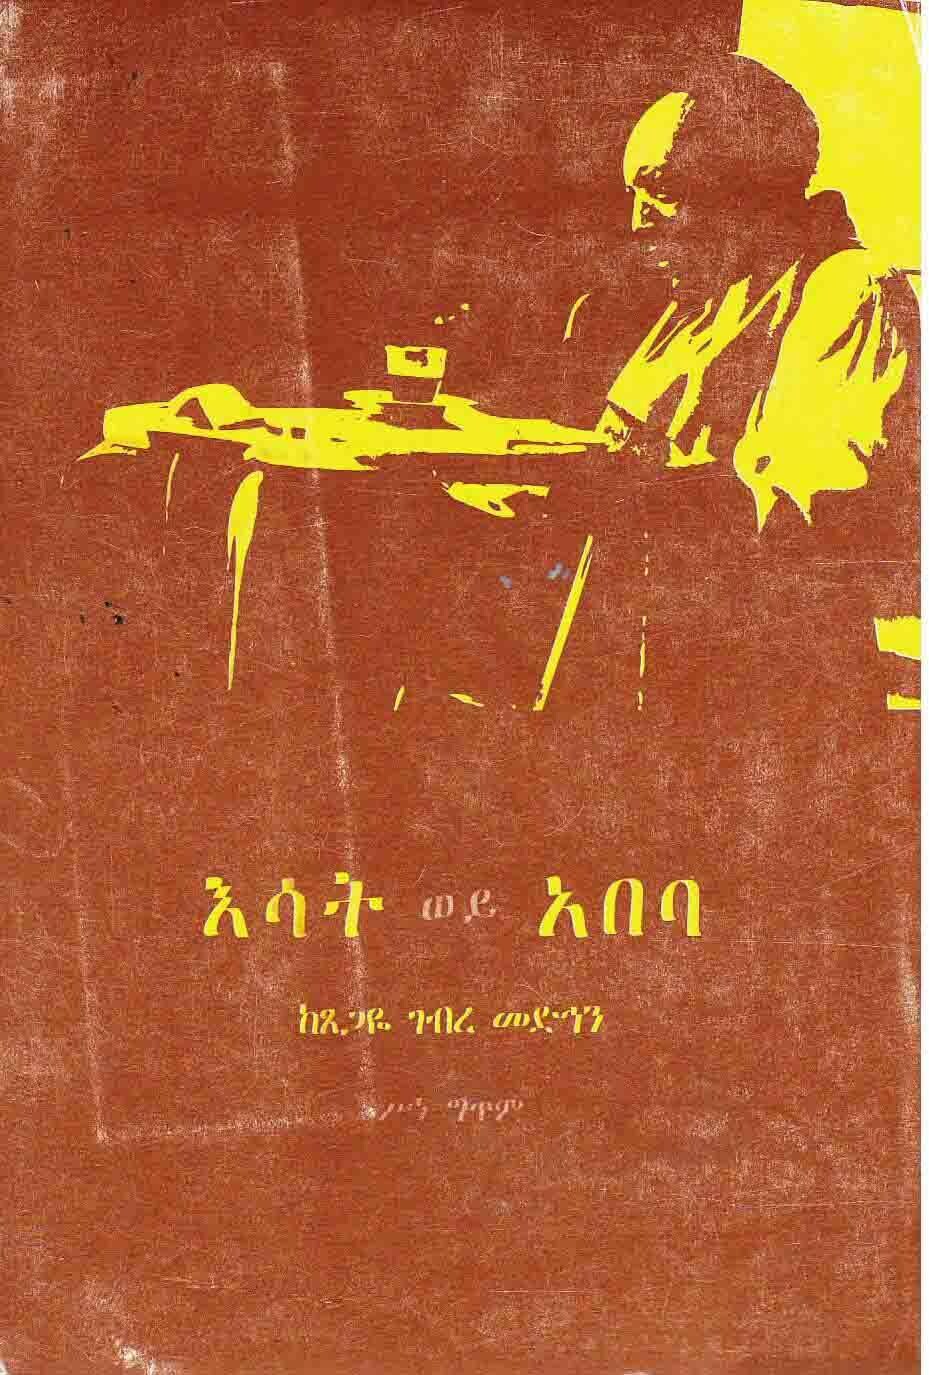 እሳት ወይ አበባ ጸጋዬ ገብረ መድኅን Esat Wey Abeba by Tsegaye G/Medhin